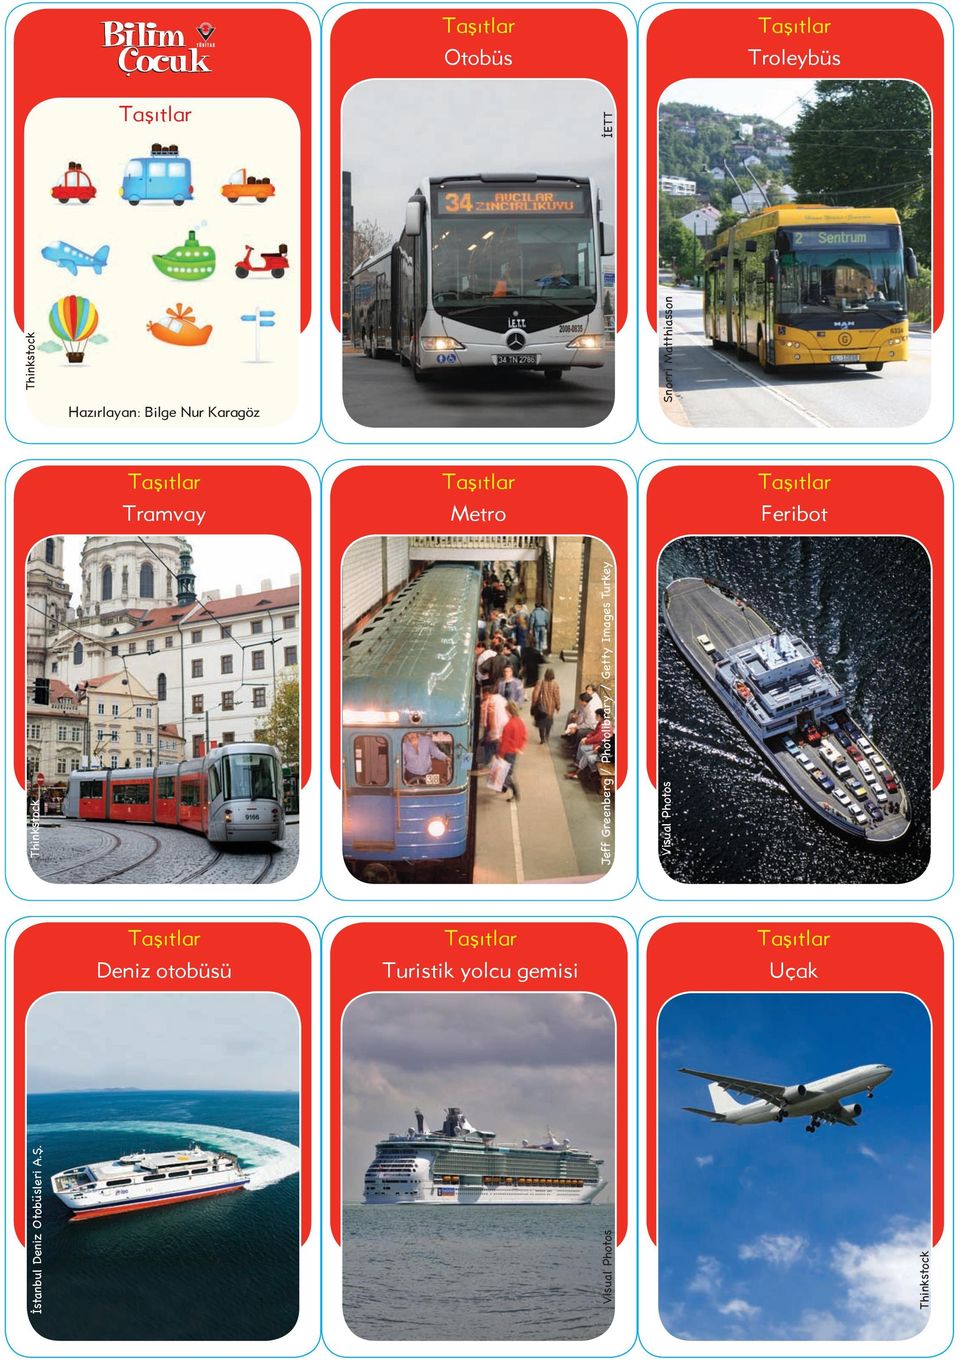 Images Turkey Feribot Deniz otobüsü Turistik yolcu